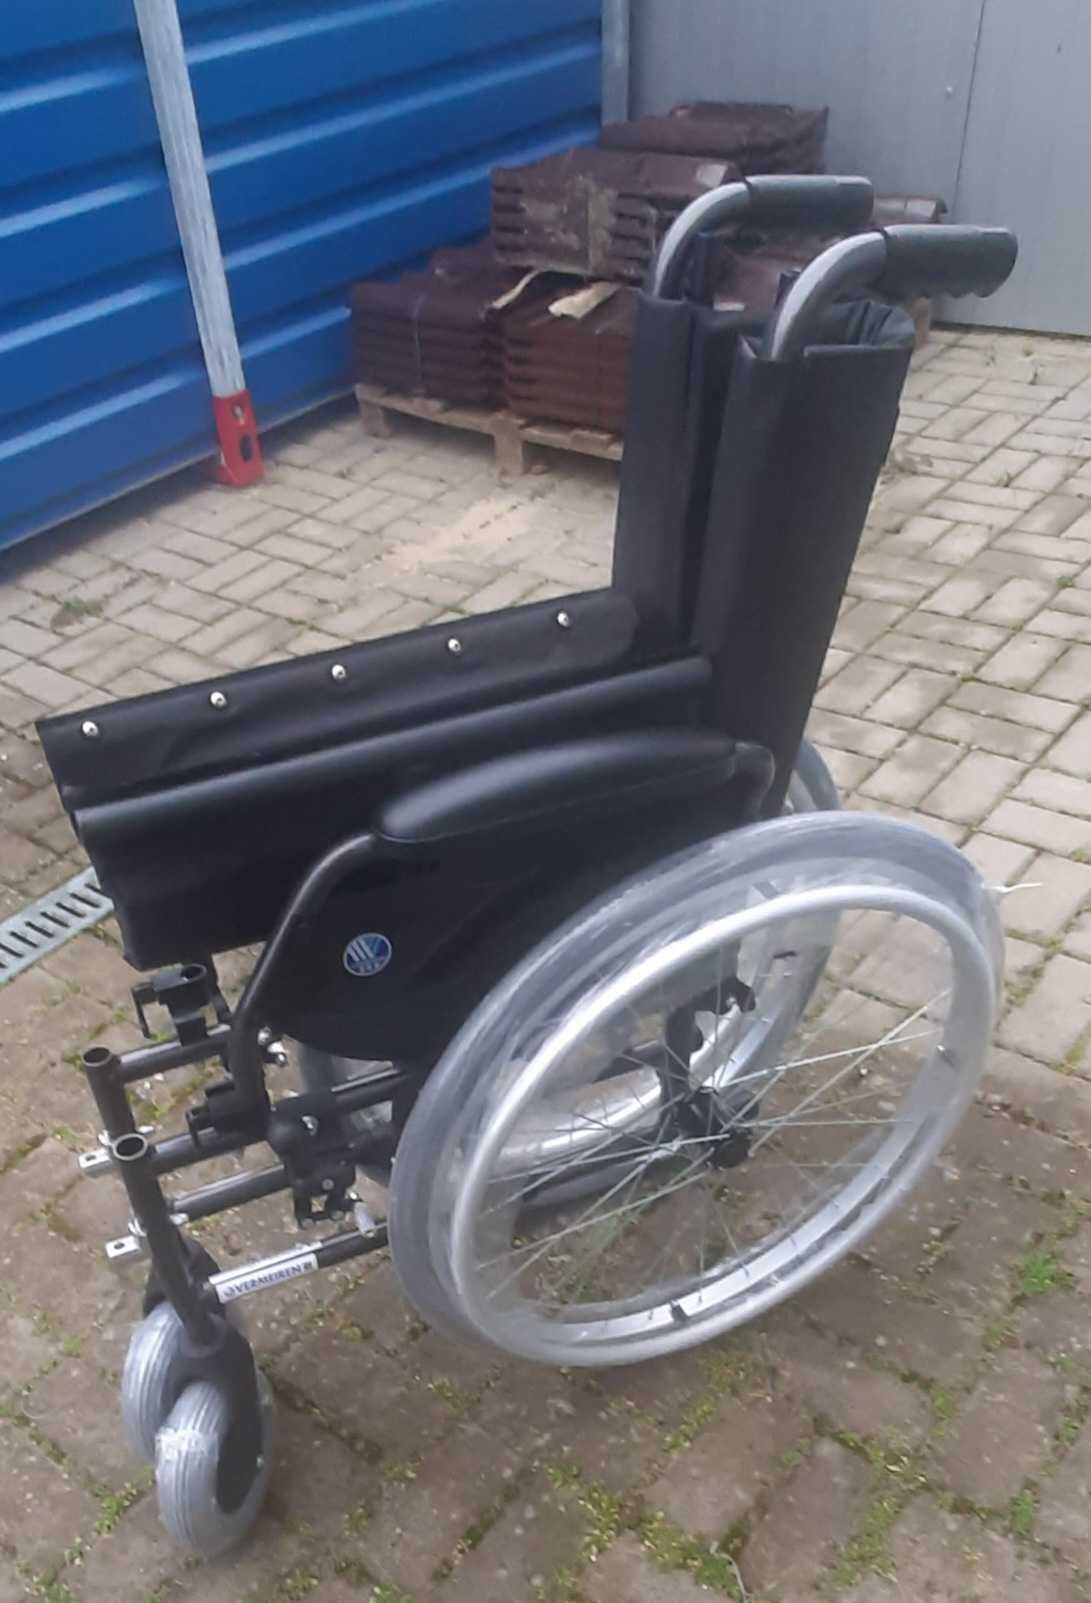 Wózek inwalidzki zwykły składany tradycyjny duży wybór mocny zadbany